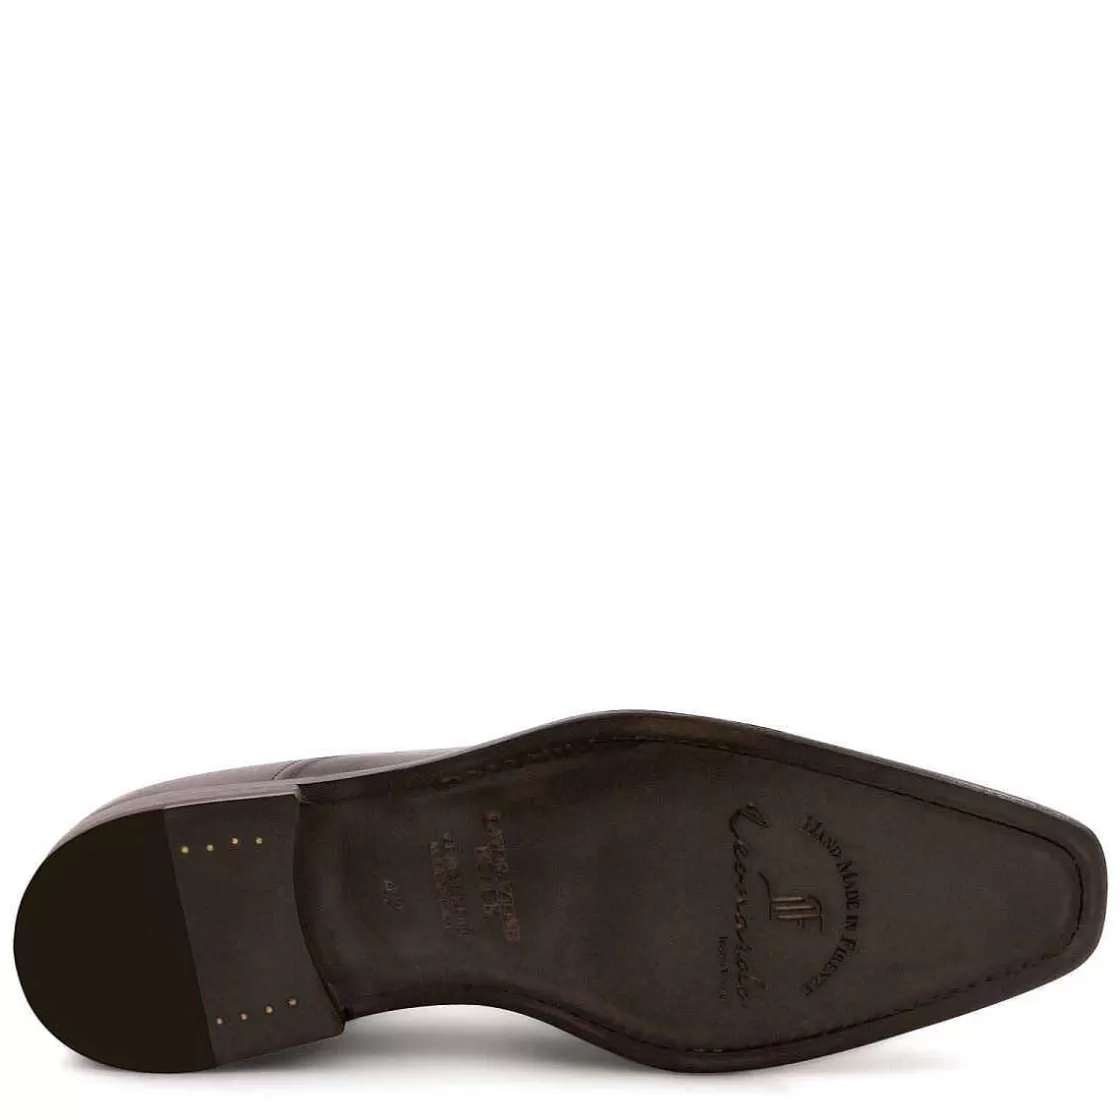 Leonardo Tassel Loafers For Men In Gray Leather Outlet